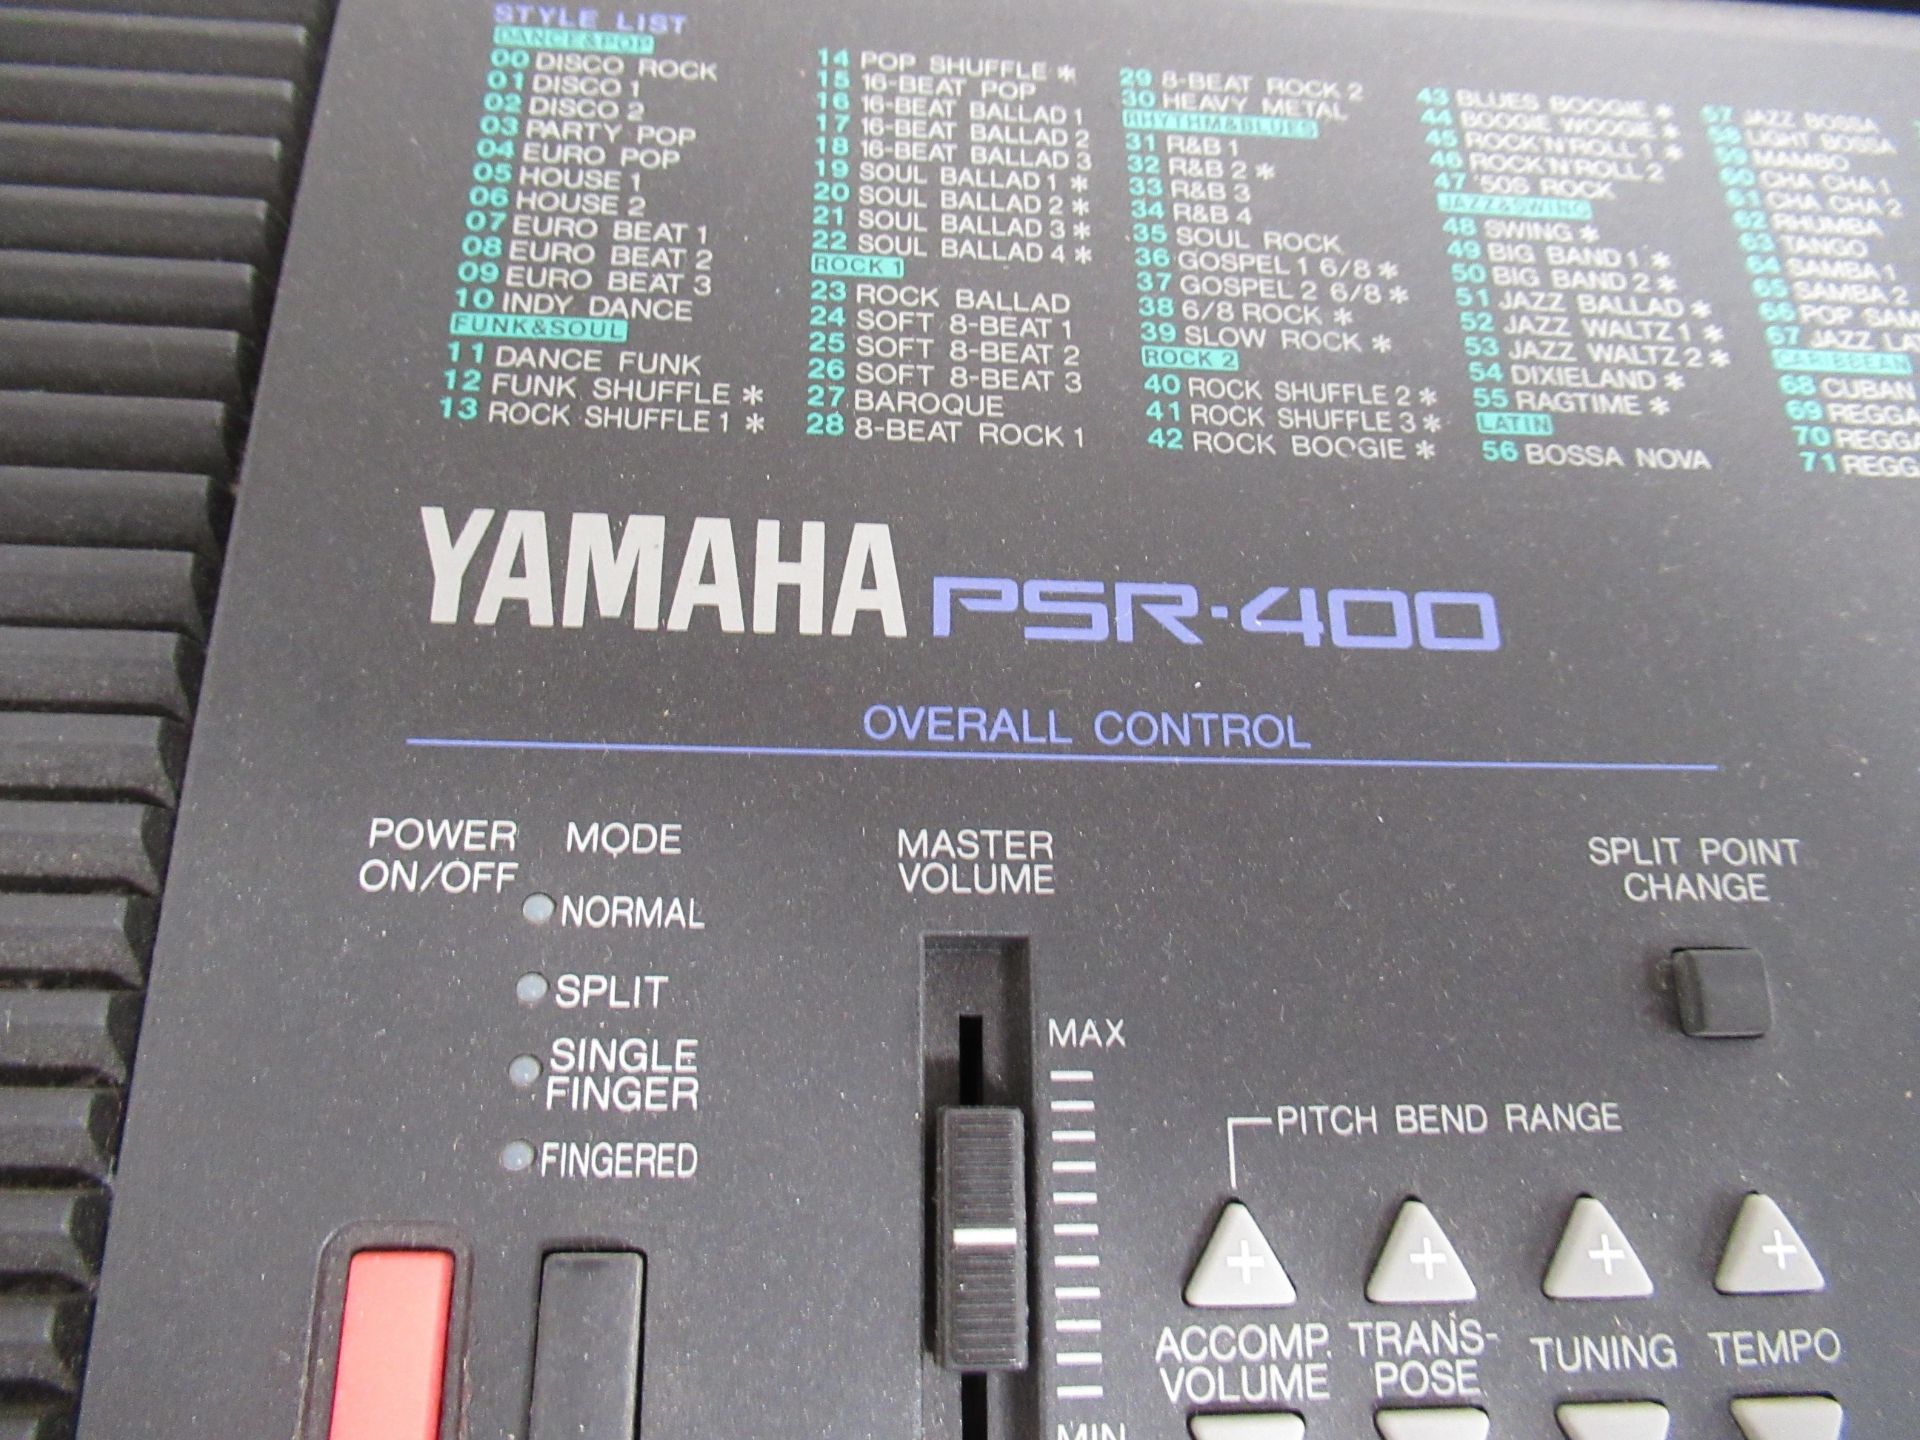 Yamaha RSR-400 Keyboard - Image 2 of 2